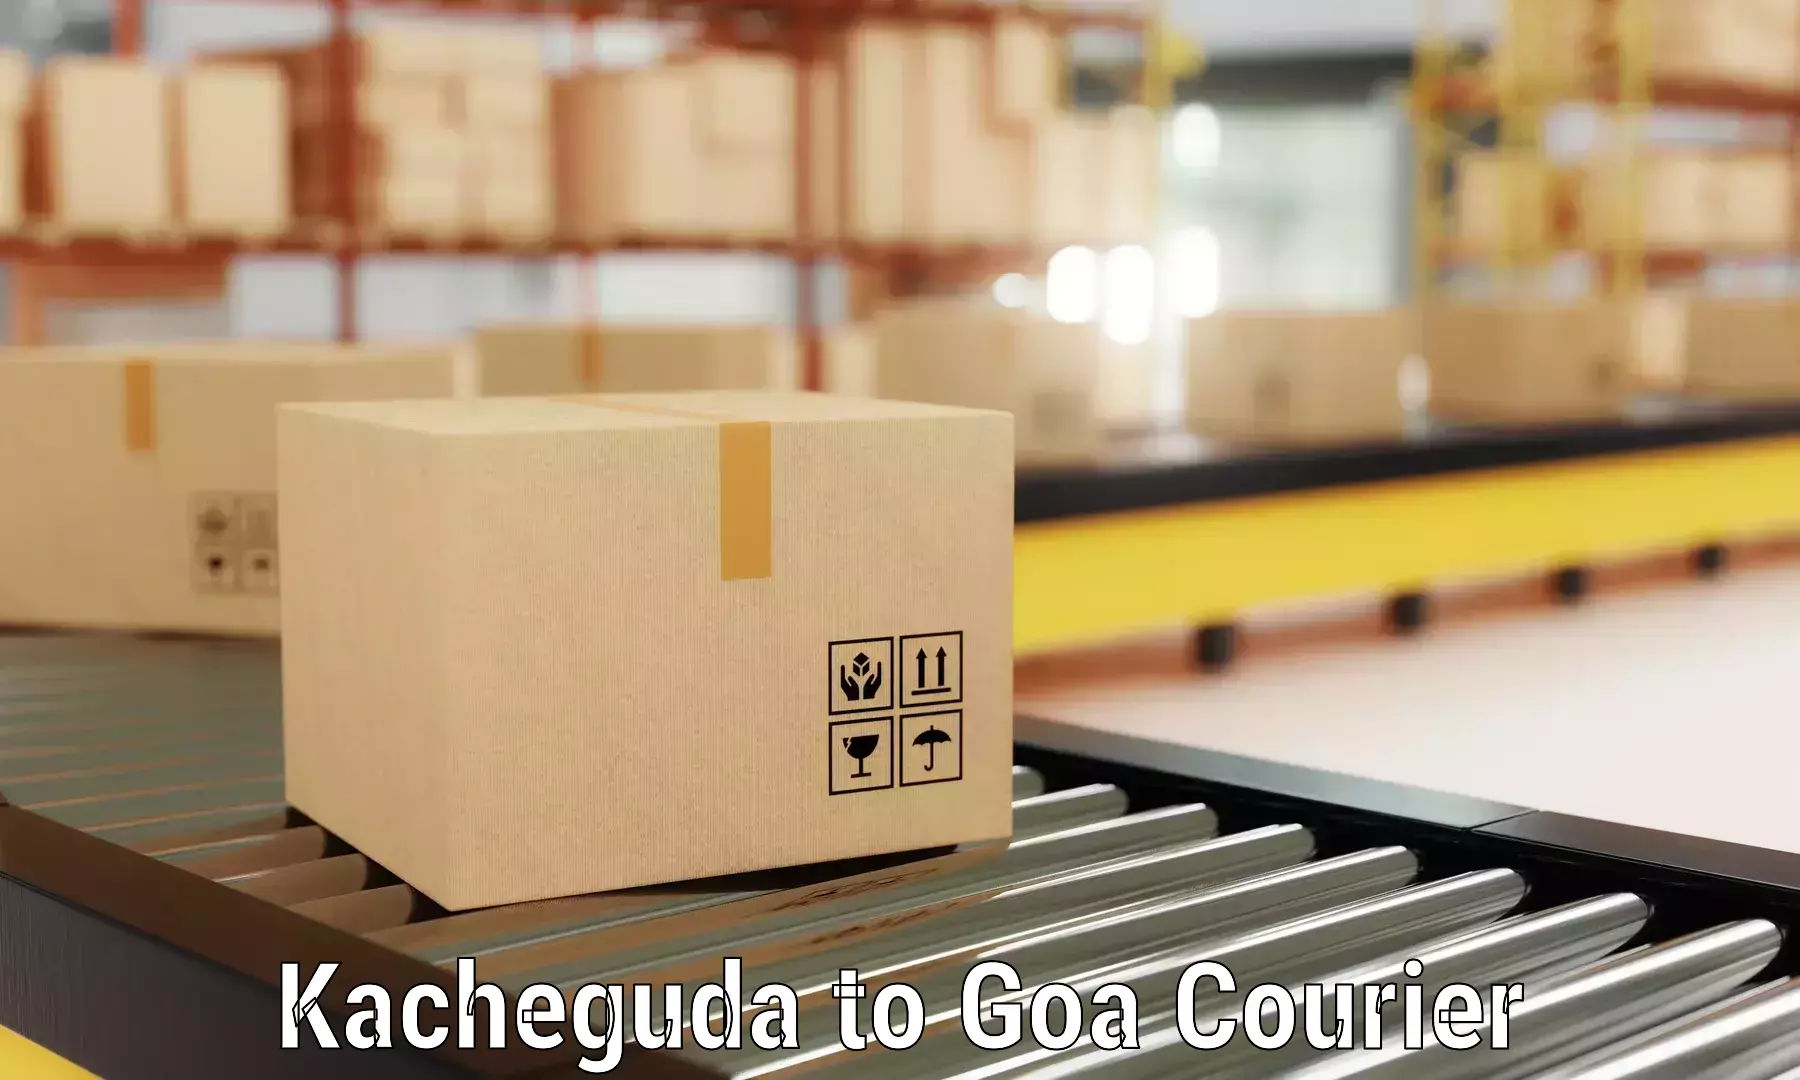 Cost-effective moving options Kacheguda to IIT Goa